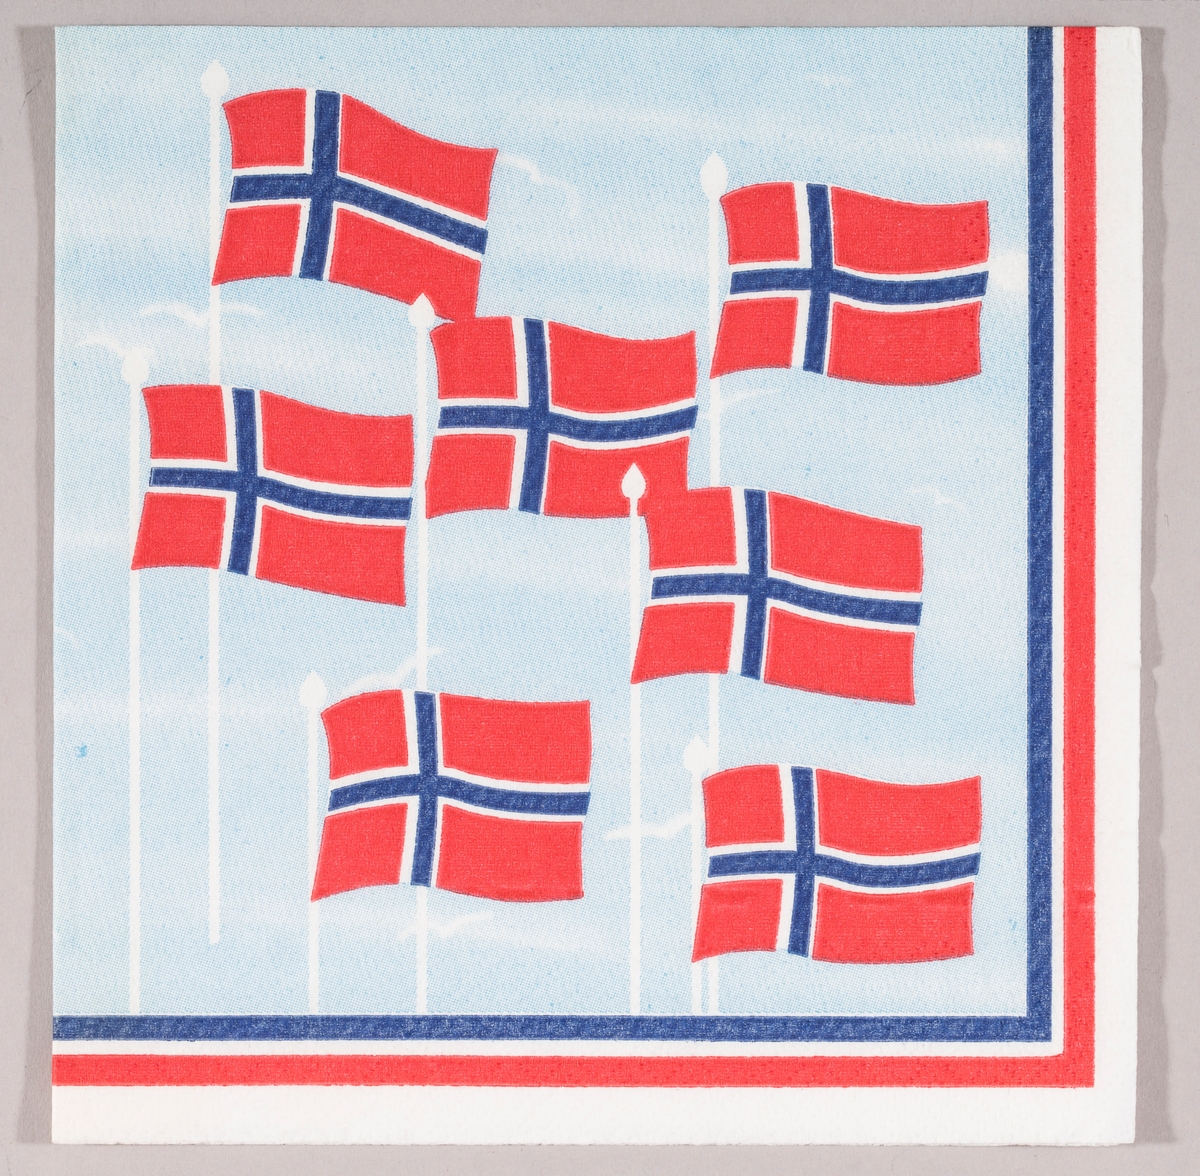 Norske flagg som flagrer i vinden mot en lysblå himmel